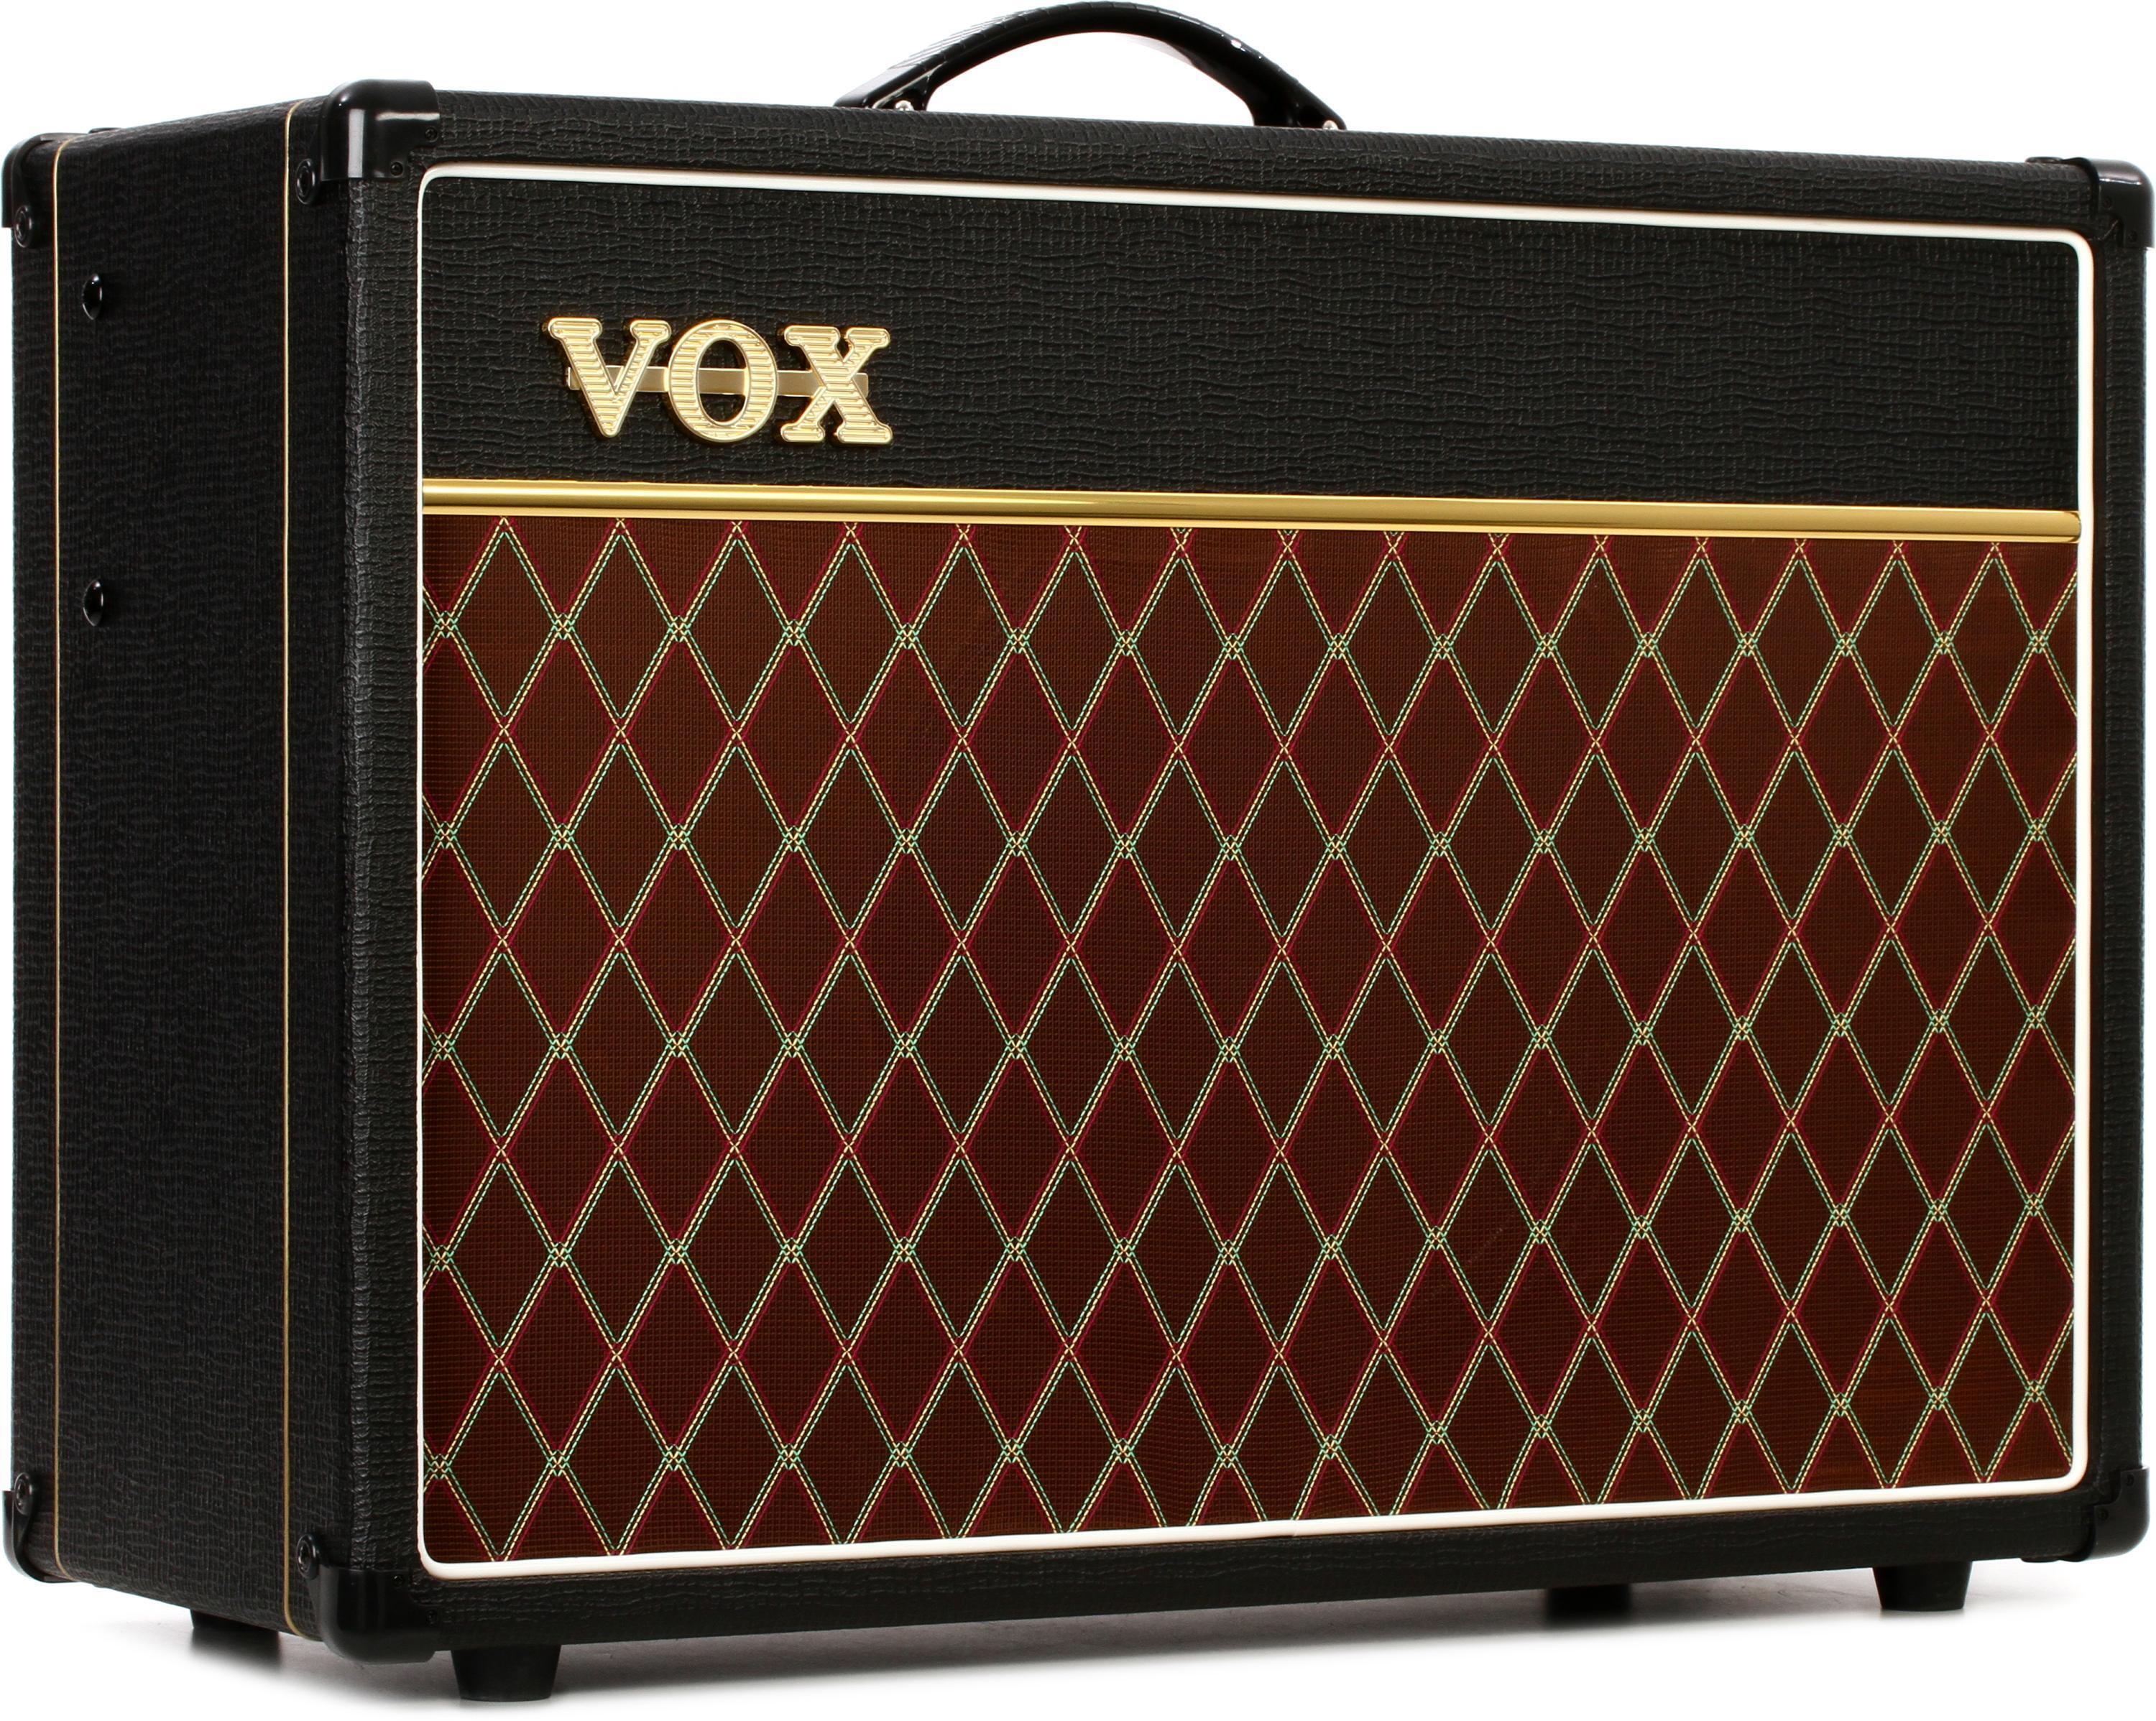 Vox Ac15c1 1x12 15 Watt Combo Amp